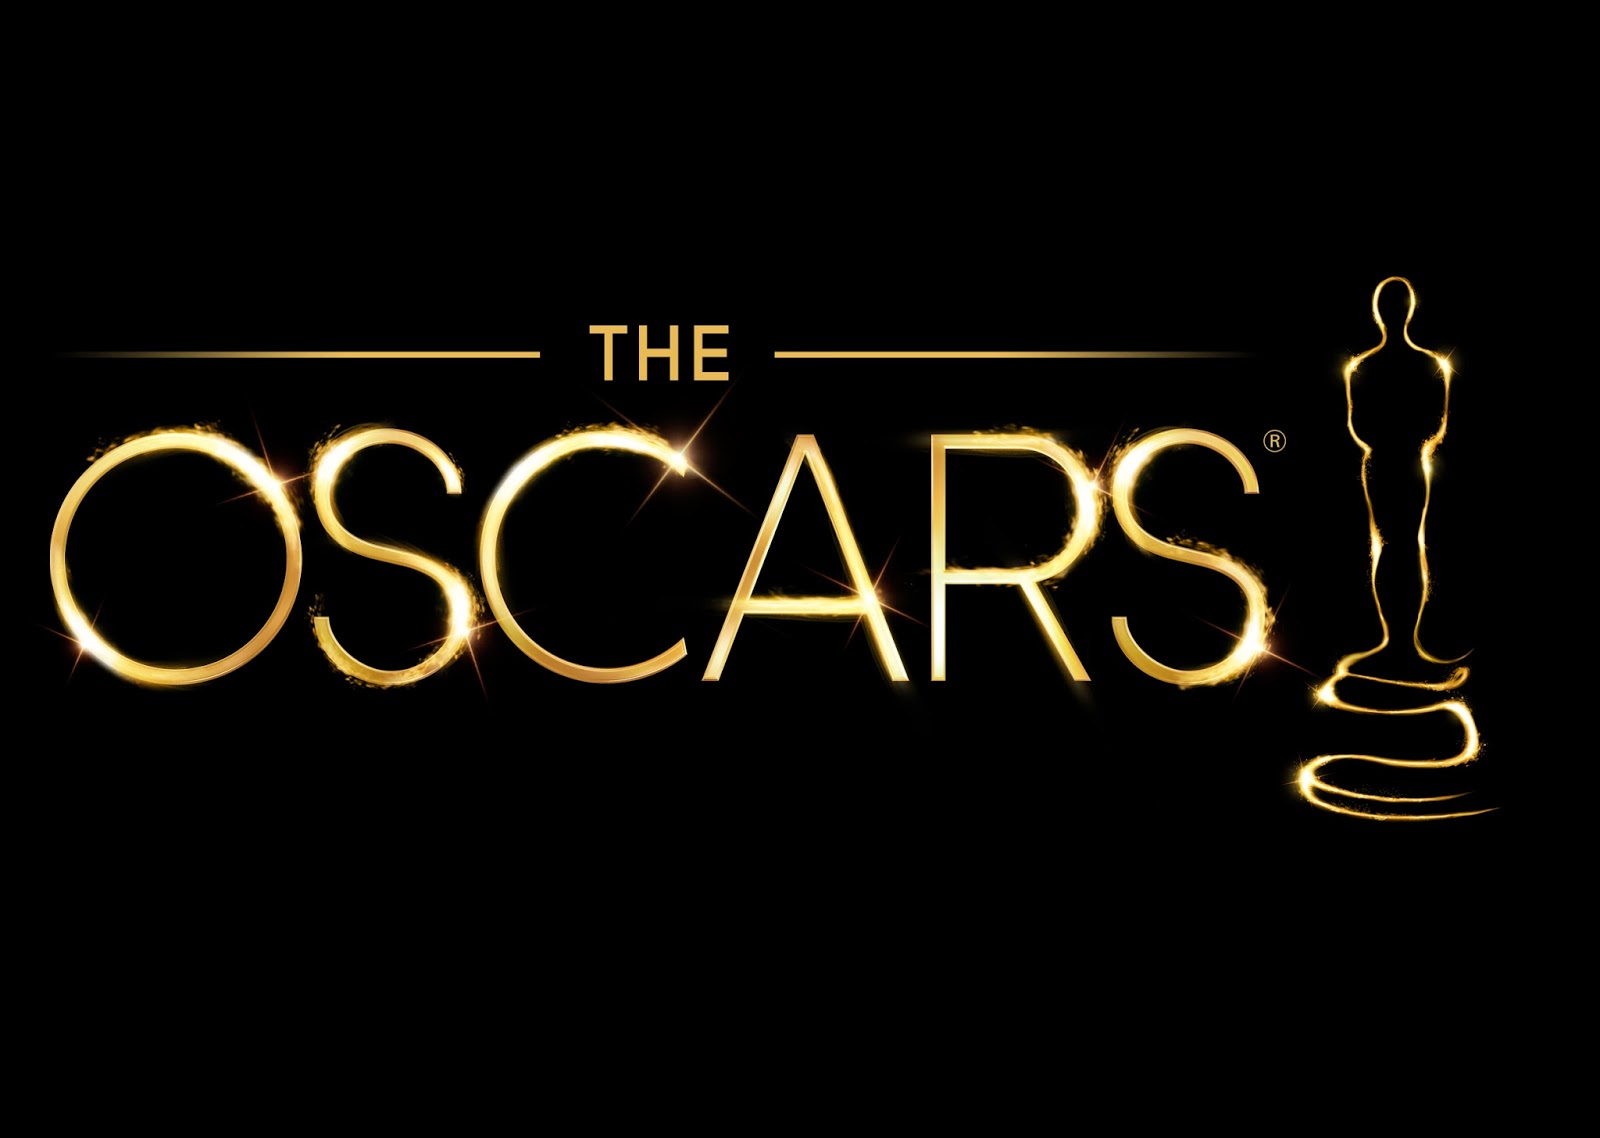 The 85th Academy AwardsÂ® will air live on OscarÂ® Sunday, February 24, 2013.